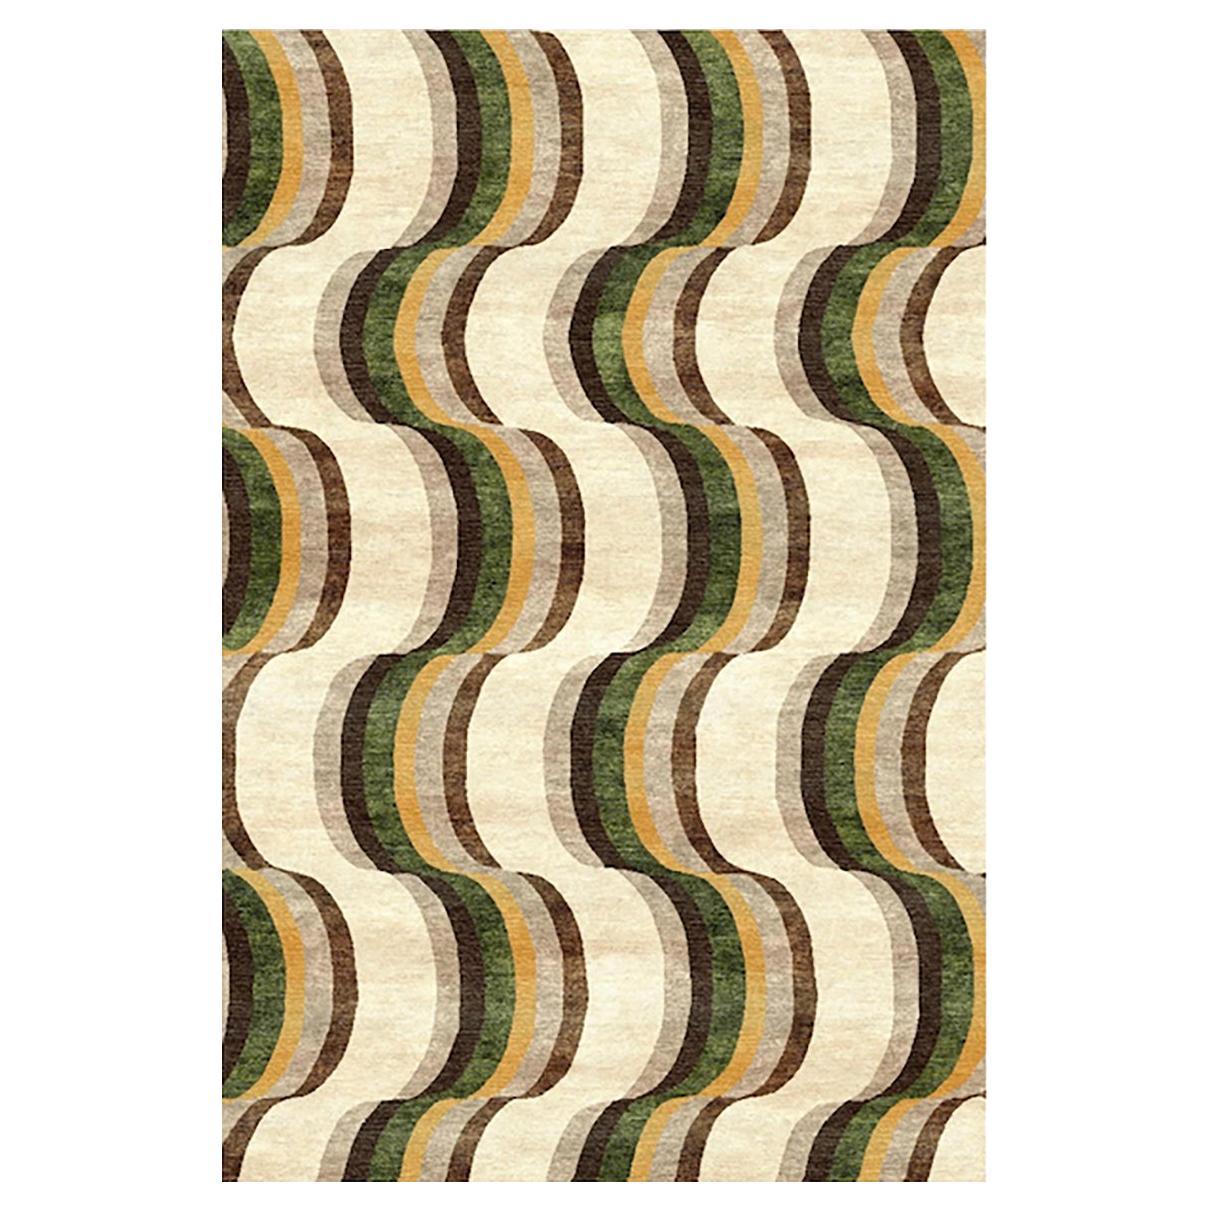 Sasha Bikoff Kollektion, Moderner Teppich „Ripple“ in Grün und Braun, 8'x10'